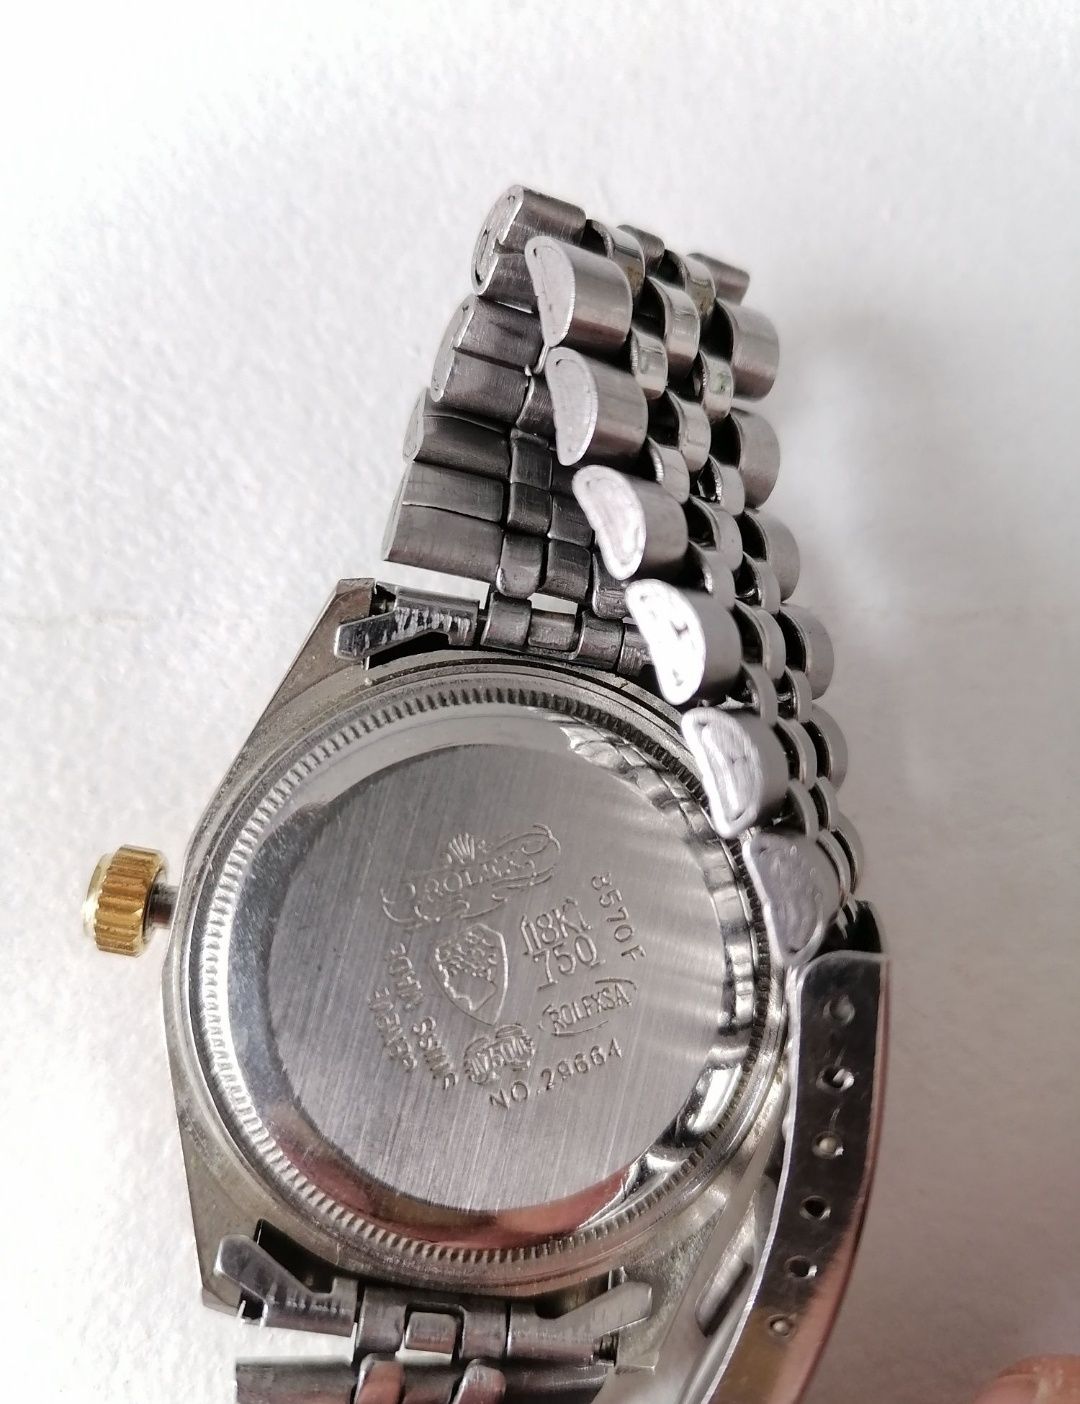 Zegarek Rolex no.29664 taniej nie będzie